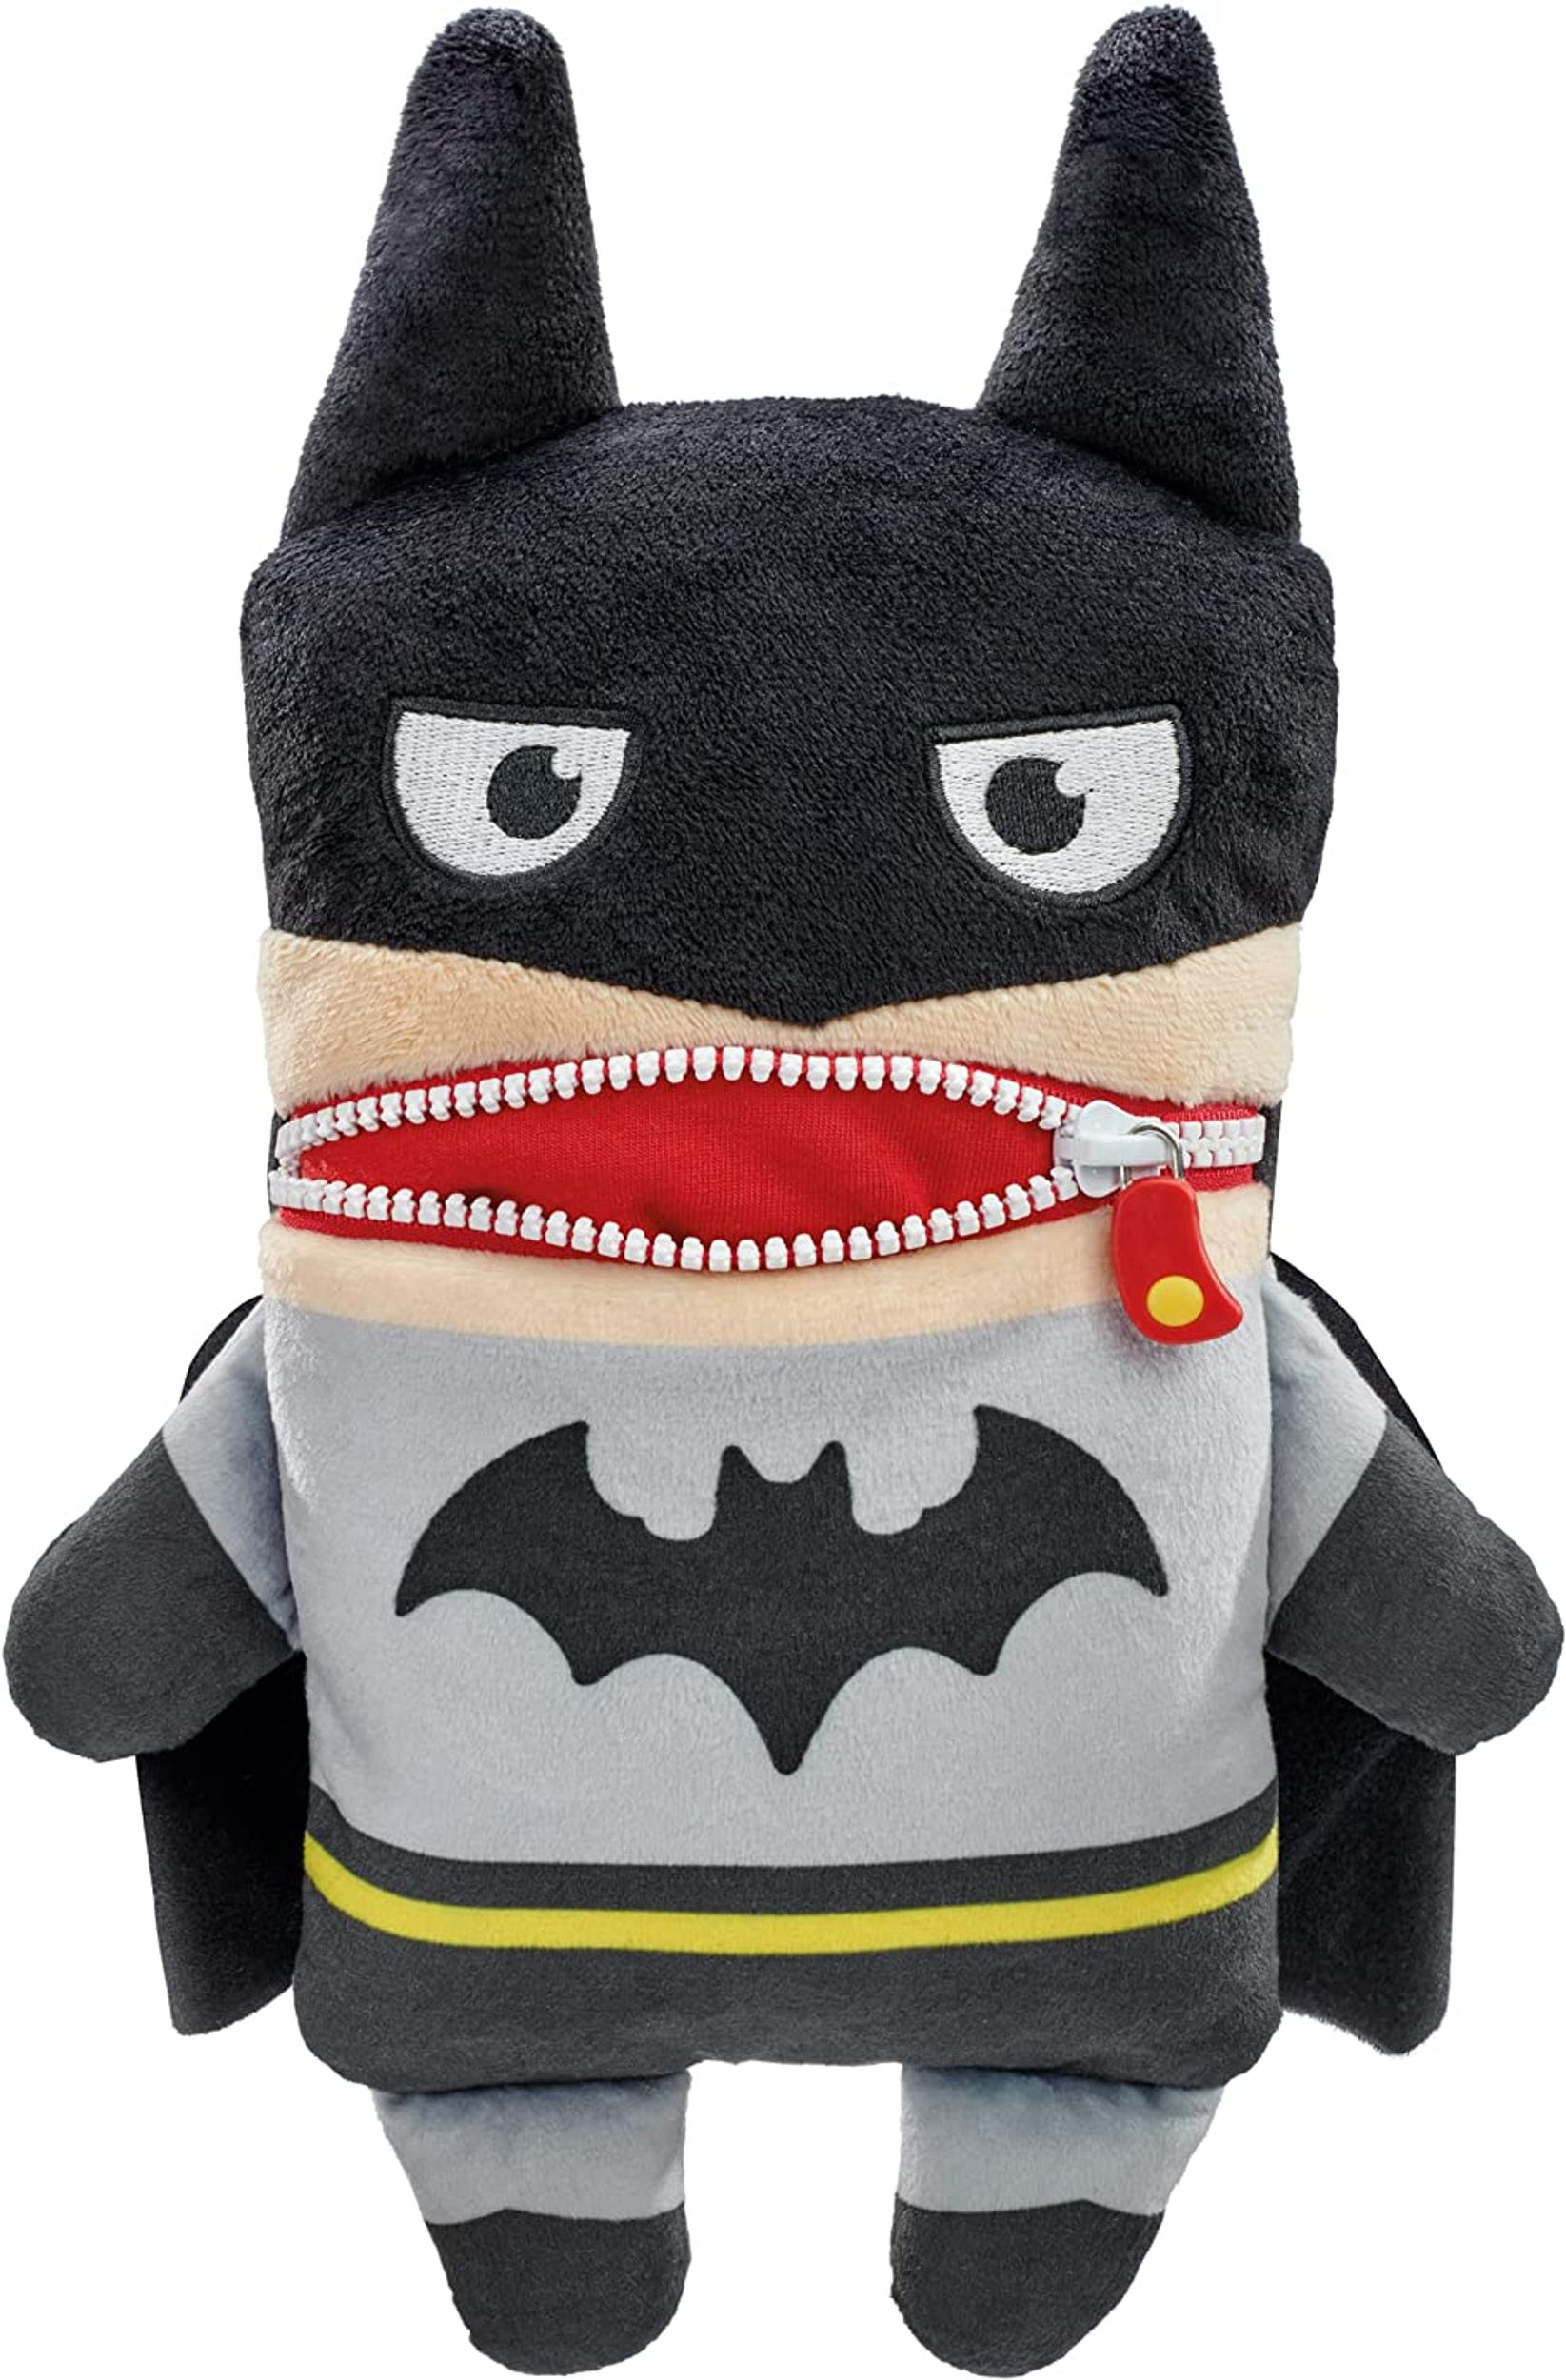 SCHMIDT SPIELE Sorgenfresser DC Super Batman Hero Plüschfigur